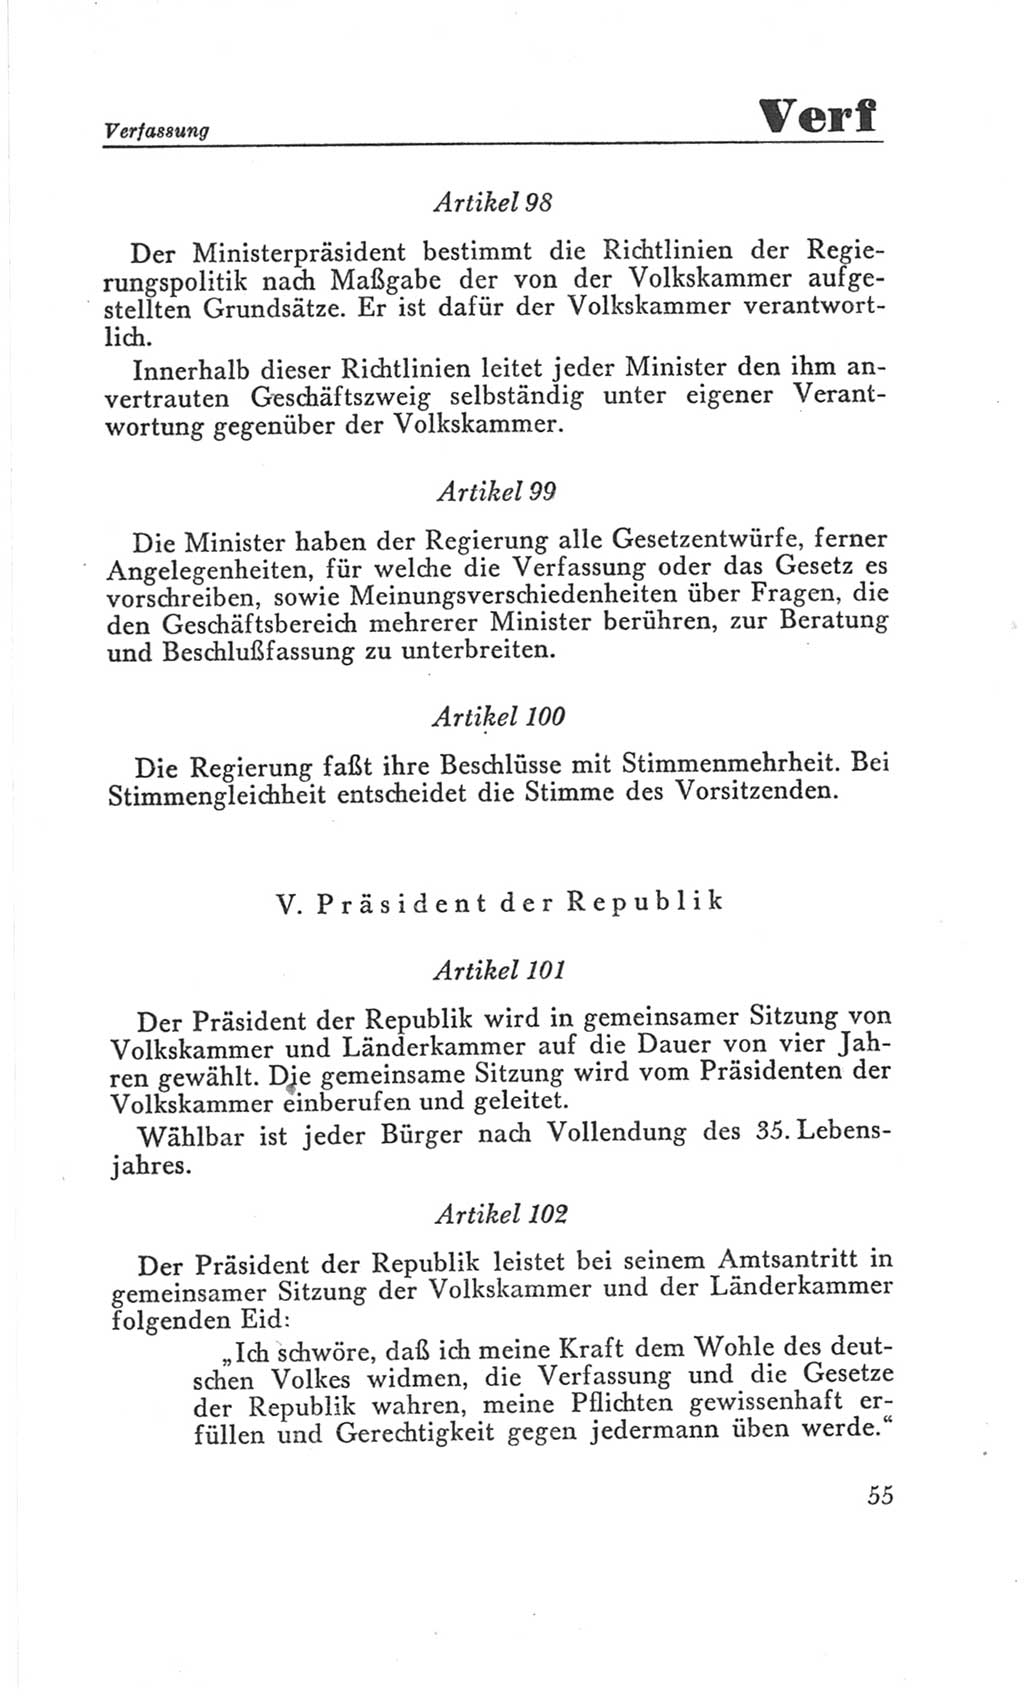 Handbuch der Volkskammer (VK) der Deutschen Demokratischen Republik (DDR), 3. Wahlperiode 1958-1963, Seite 55 (Hdb. VK. DDR 3. WP. 1958-1963, S. 55)